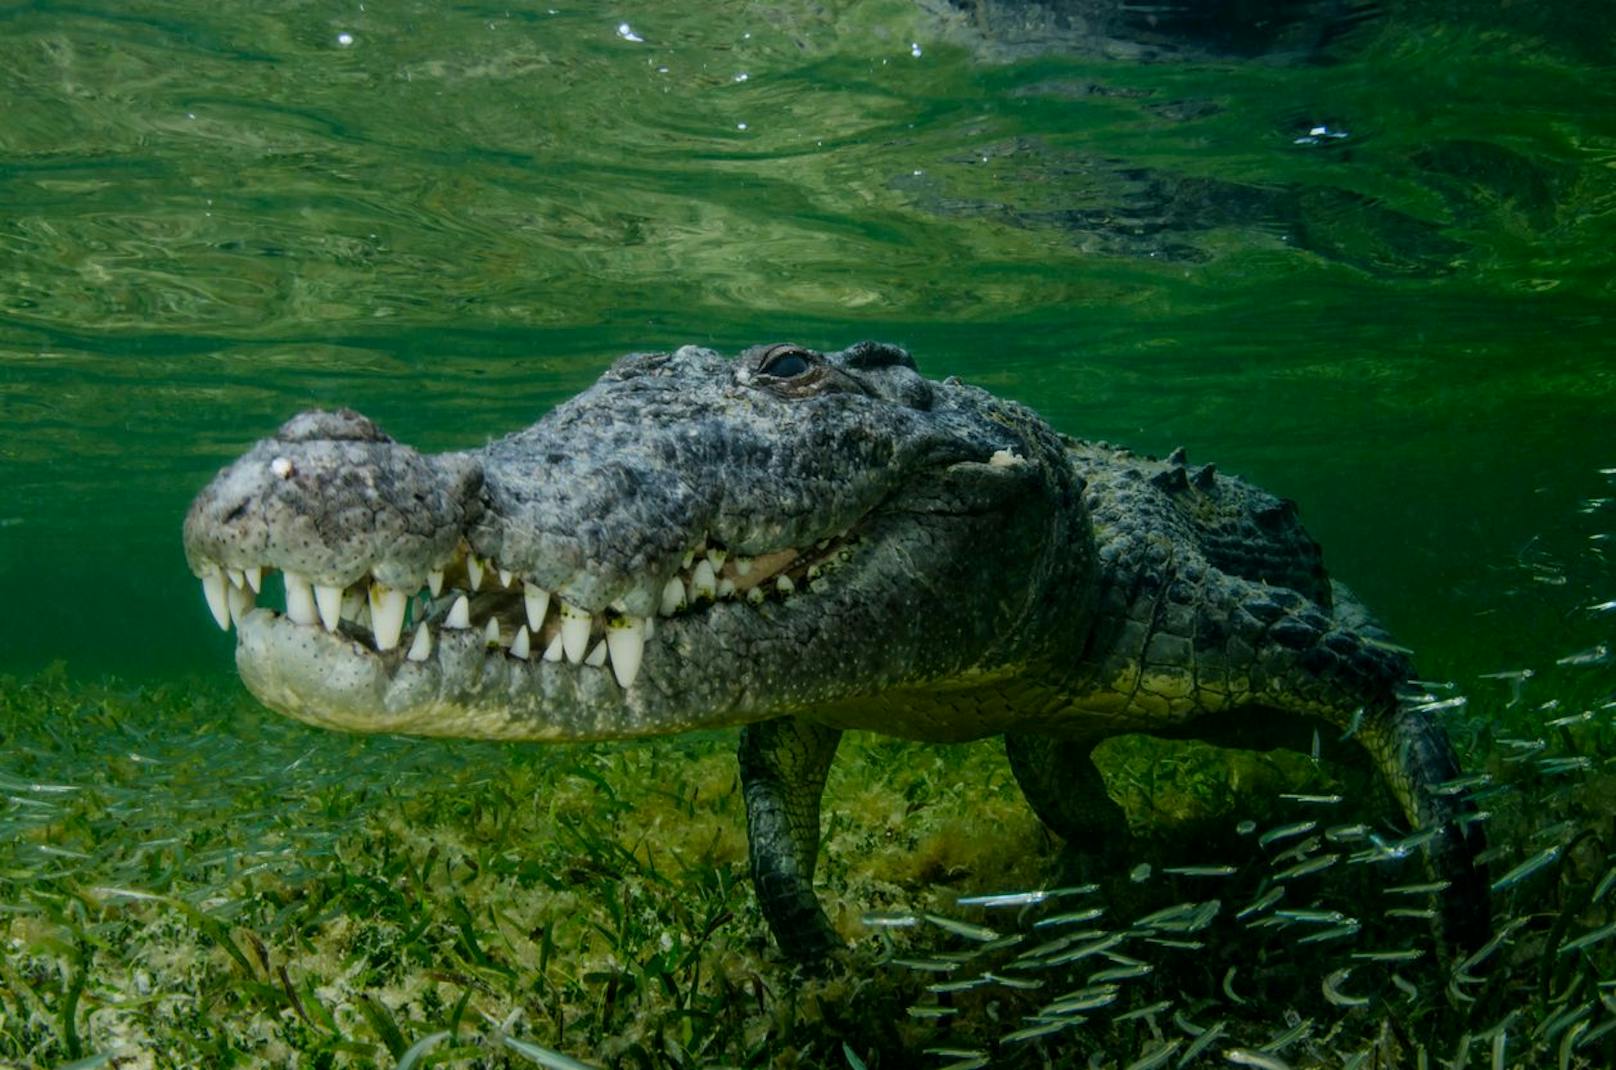 Wo bin ich? Der Lebensraum unterscheidet sich auch: Während Krokodile sowohl im Süß-, als auch im Salzwasser vorkommen können, bevorzugt der Alligator das Süßwasser. Krokodile sind auch weltweit gesehen viel öfter verbreitet als Alligatoren - die gibt es nur in den USA und in China.